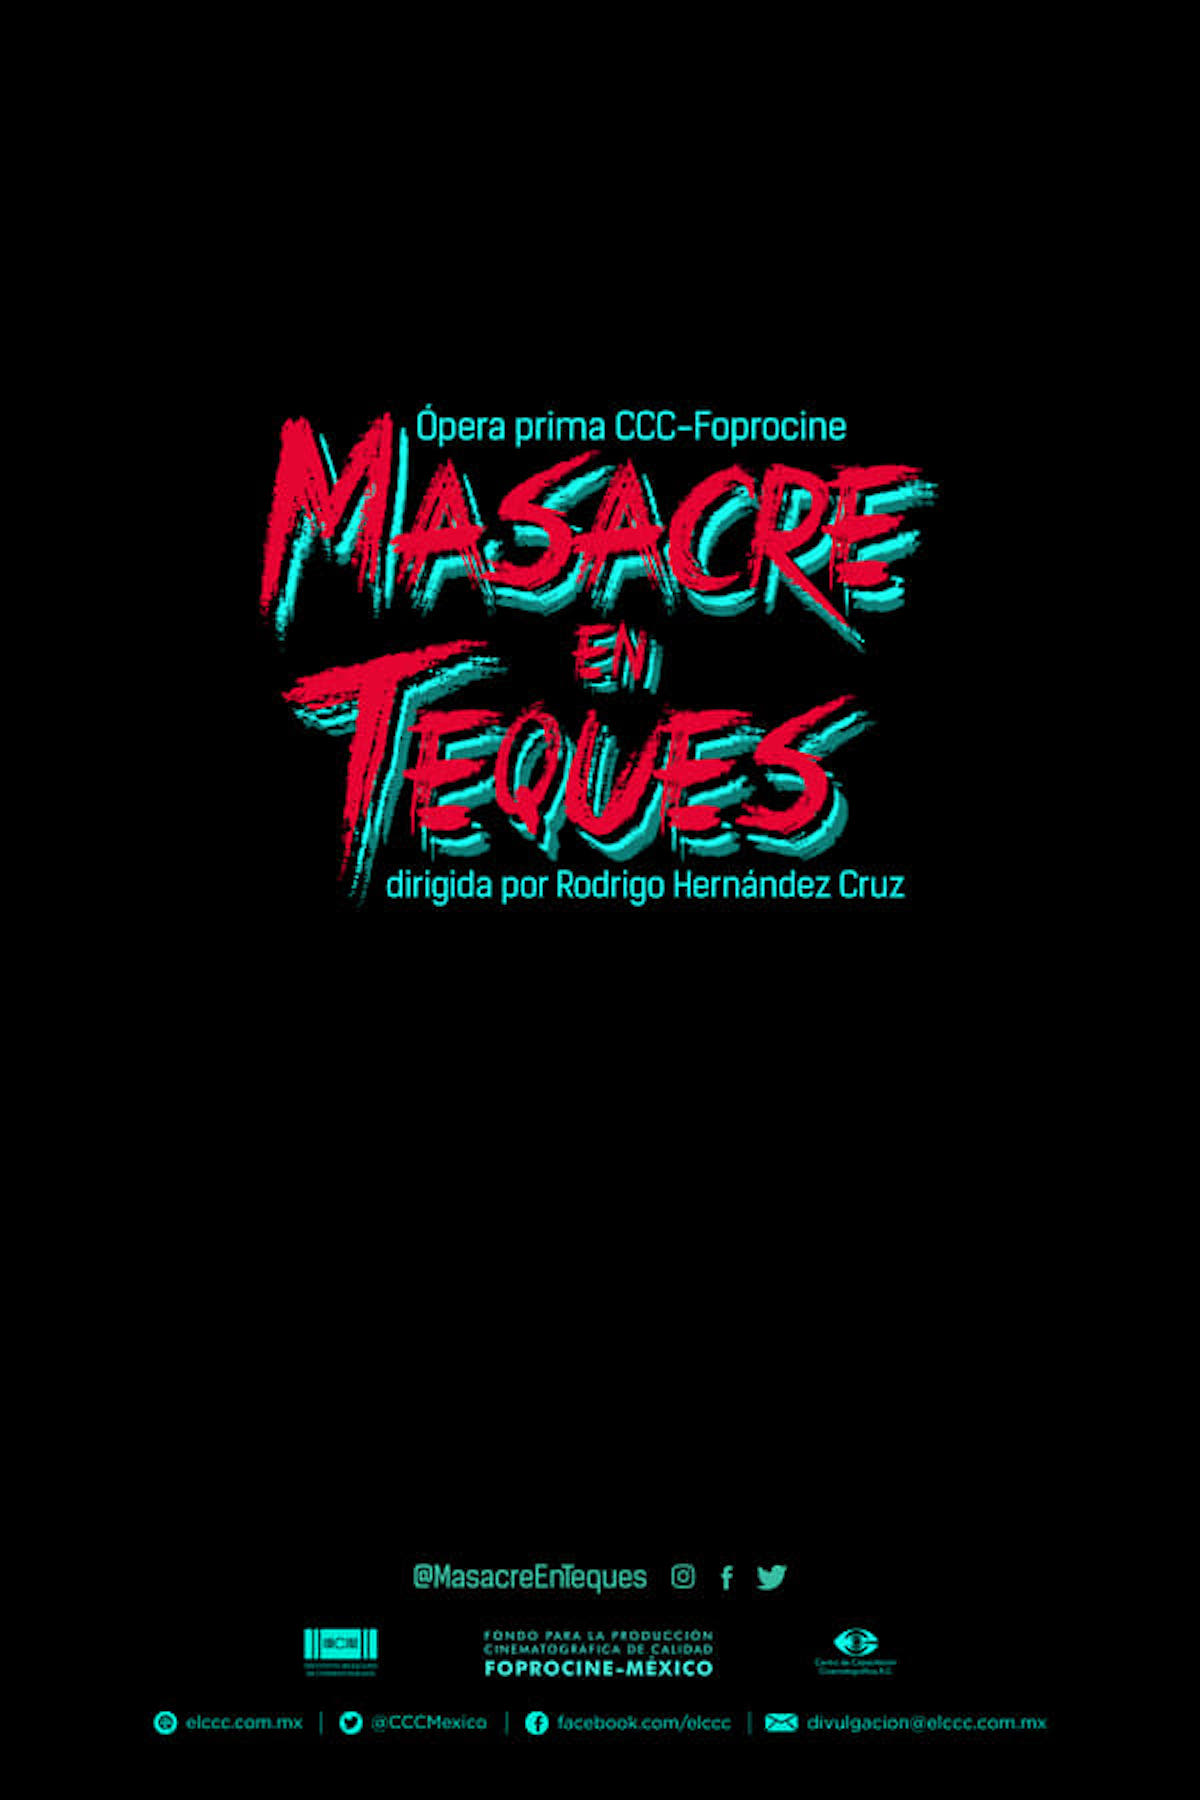 Masacre en Teques (2020)